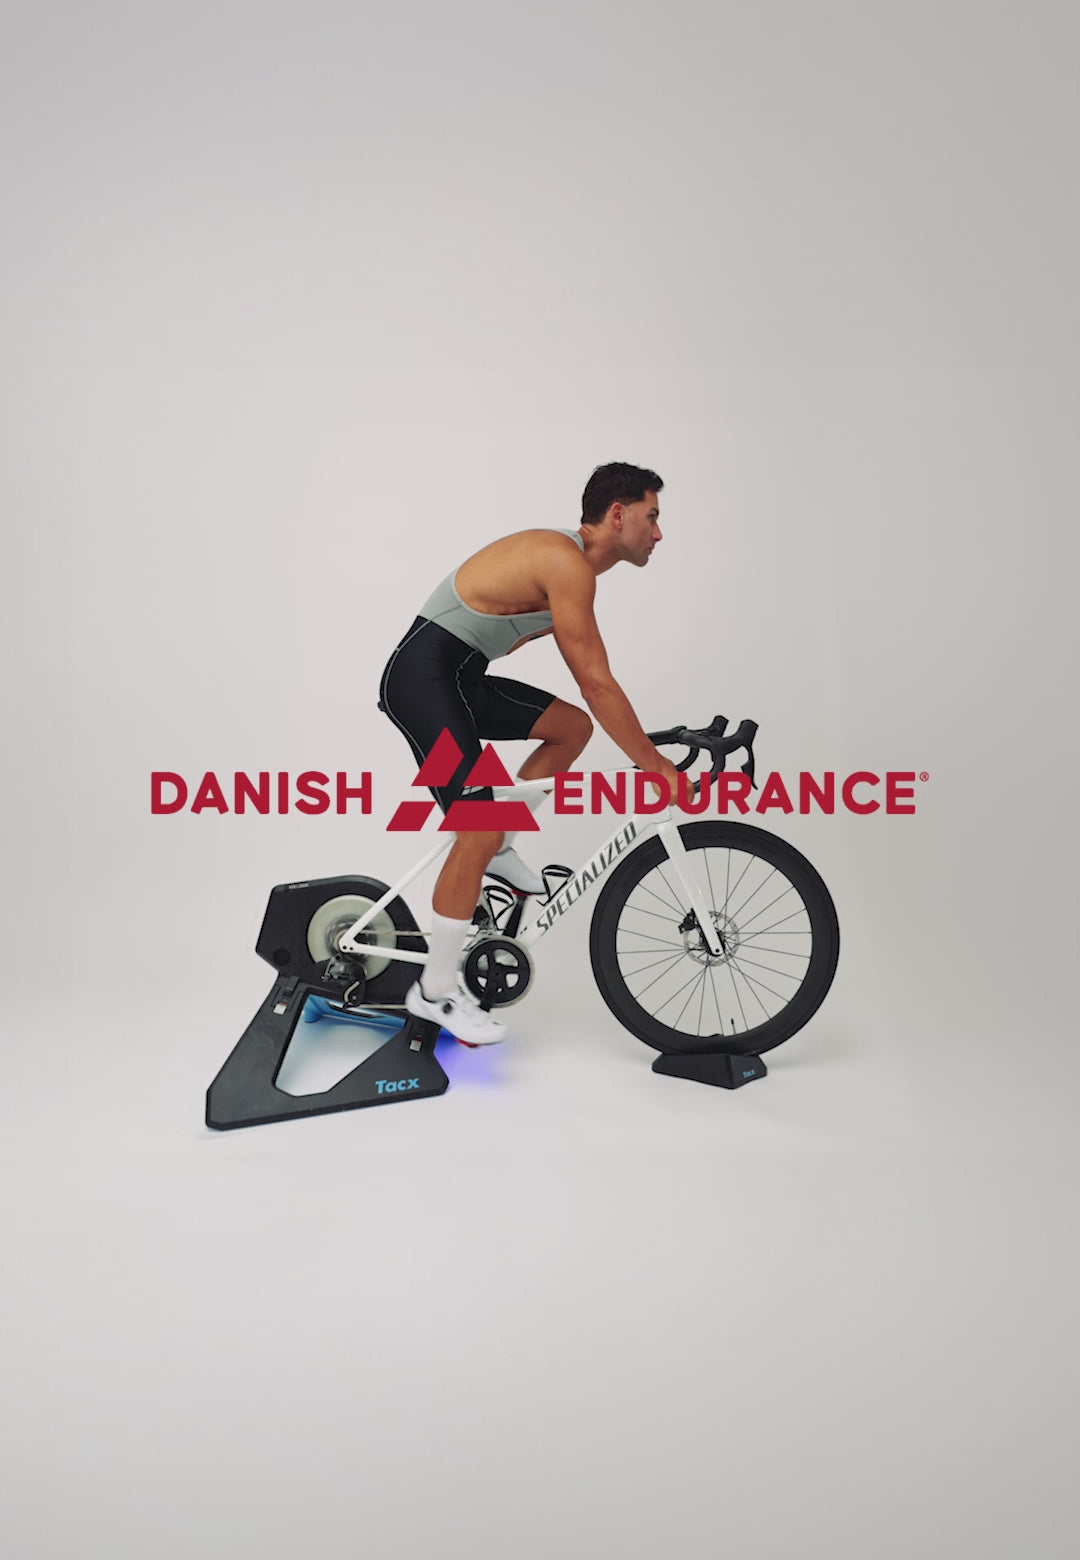 CYCLING BIB SHORTS FOR MEN – DANISH ENDURANCE